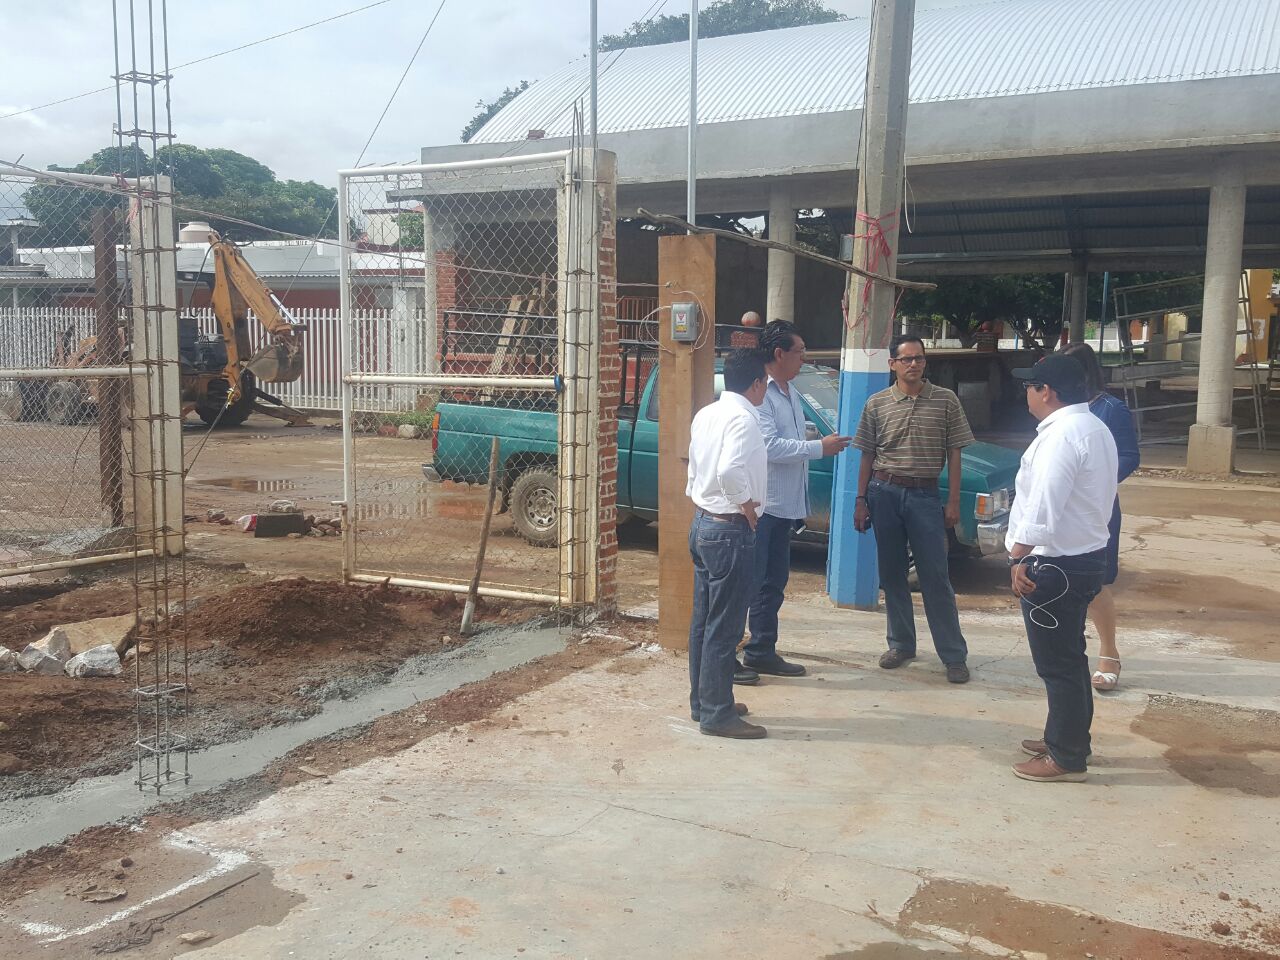 Las empresas sociales con sus arquitectos, ingenieros y expertos apoyarán la reconstrucción de viviendas en Oaxaca